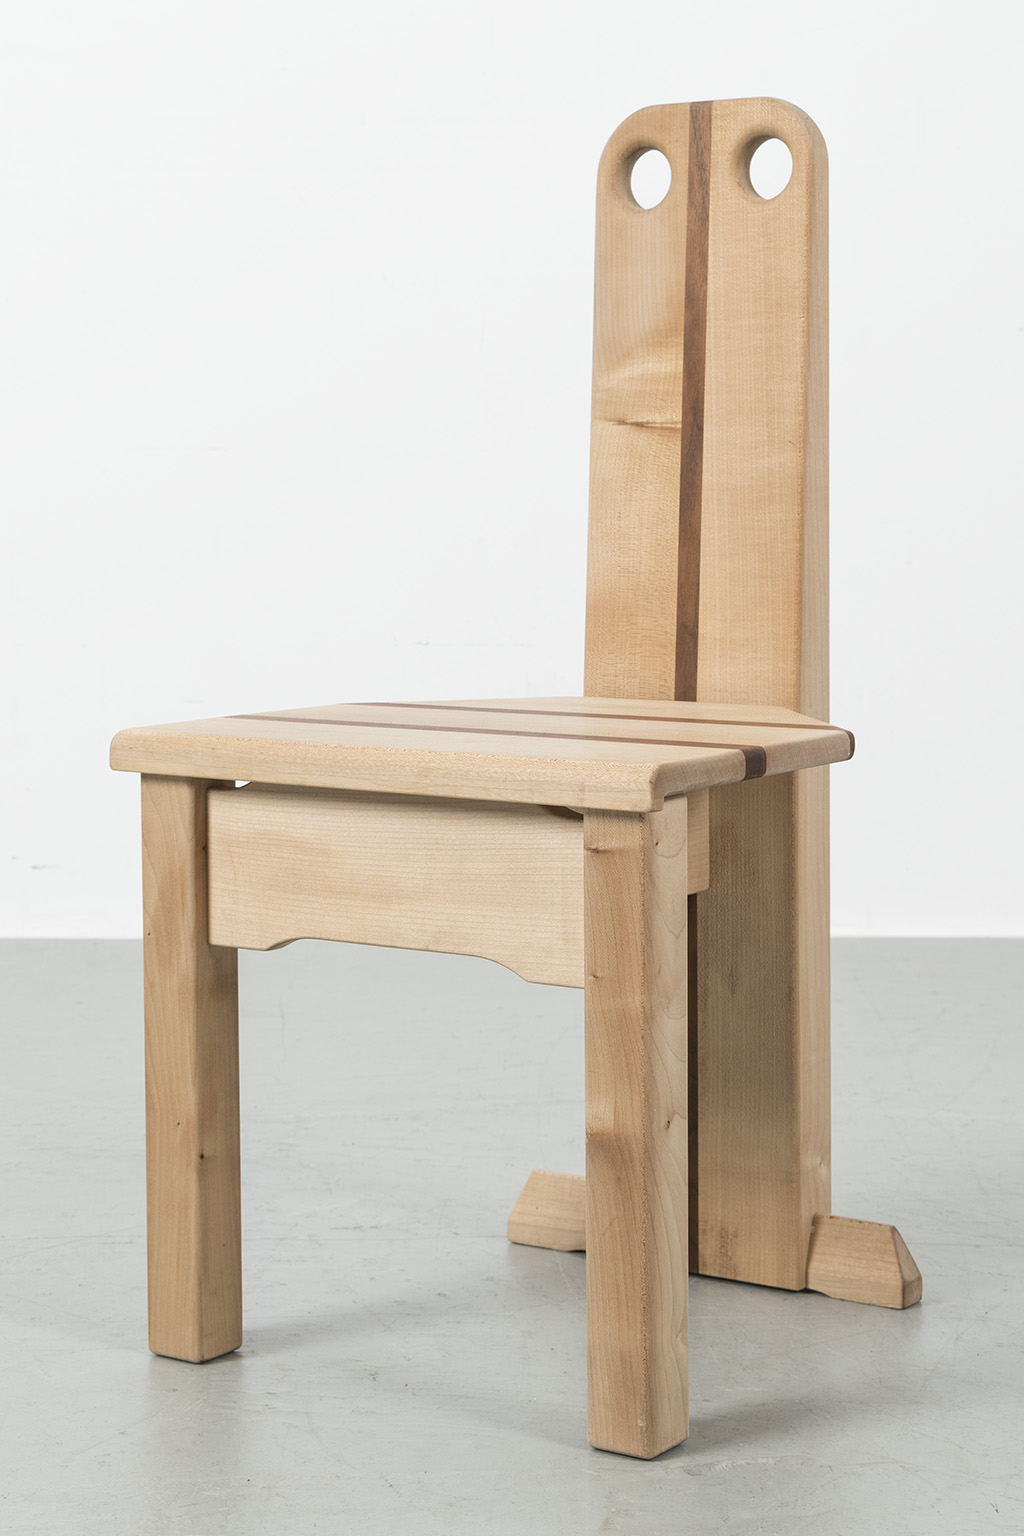 Bijzondere houten design stoel